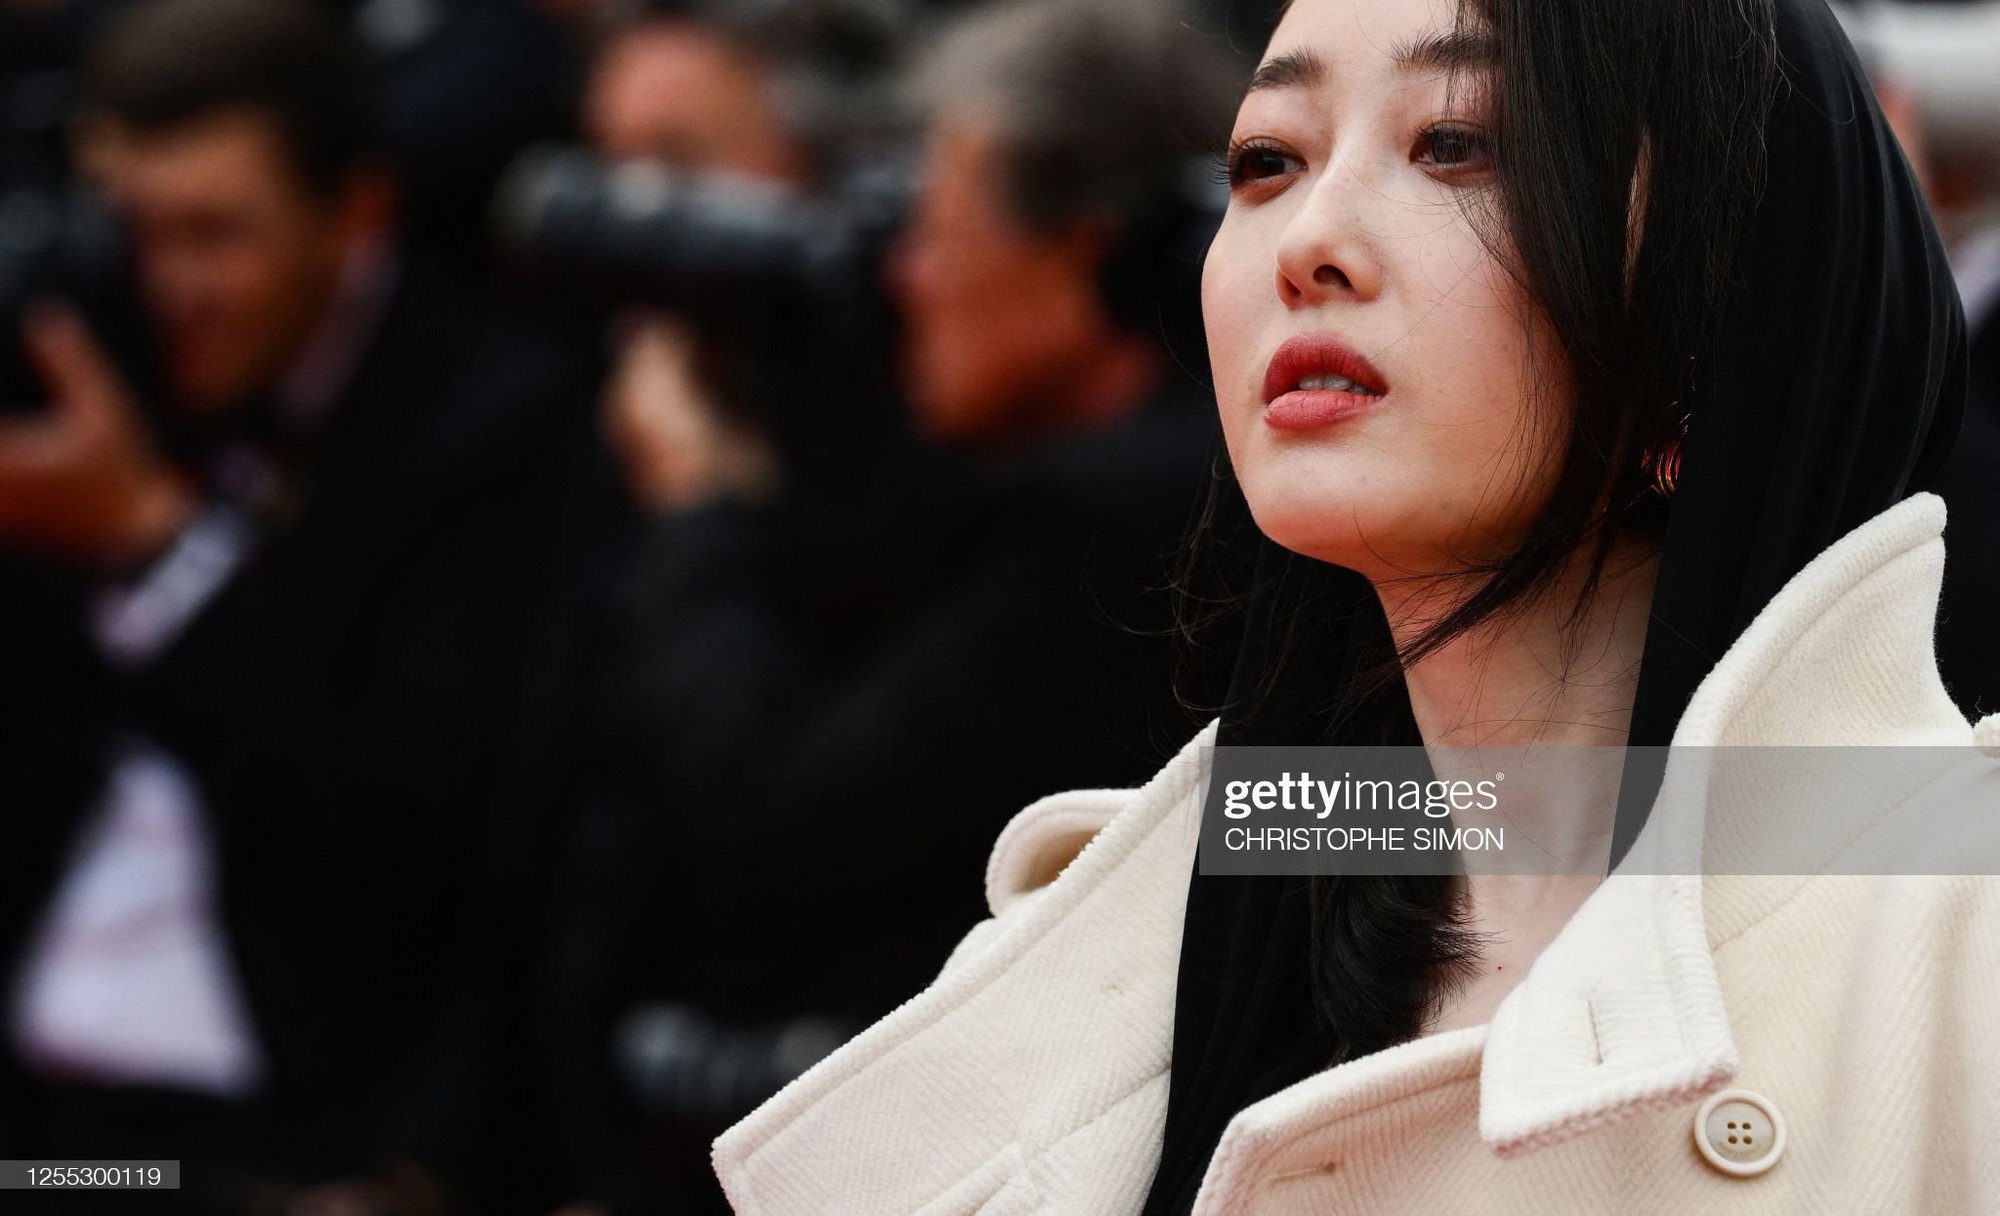 Dàn sao châu Á qua ống kính Getty Images tại LHP Cannes 2023: Chompoo Araya so kè ác liệt với Phạm Băng Băng, Chu Nhất Long soái khí như tổng tài - Ảnh 18.